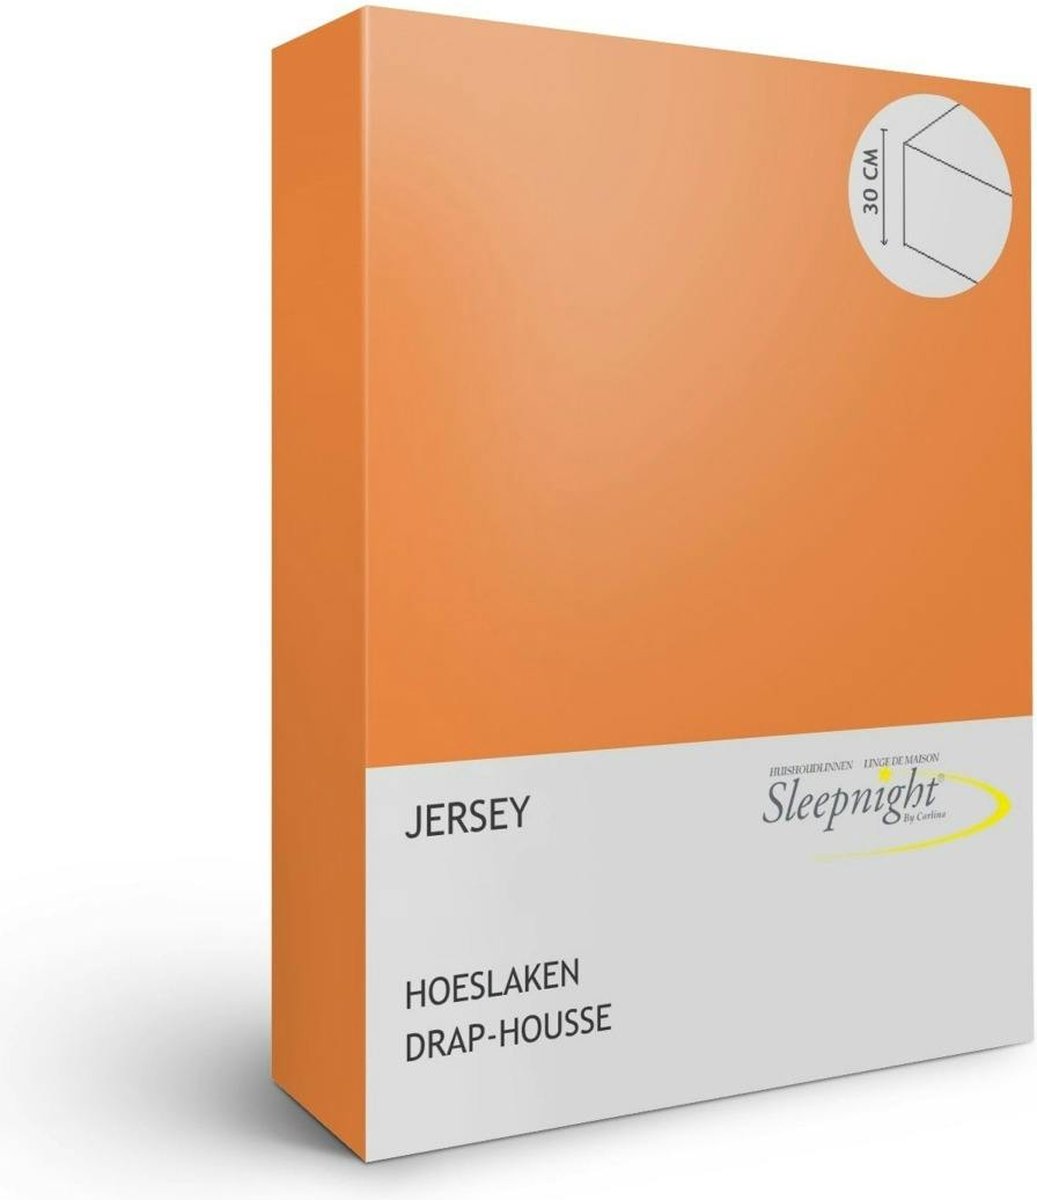 Sleepnight Hoeslaken - Oranje orangeJersey - LP843249 - B 160 x L 200 cm - Tweepersoons Strijkvrij